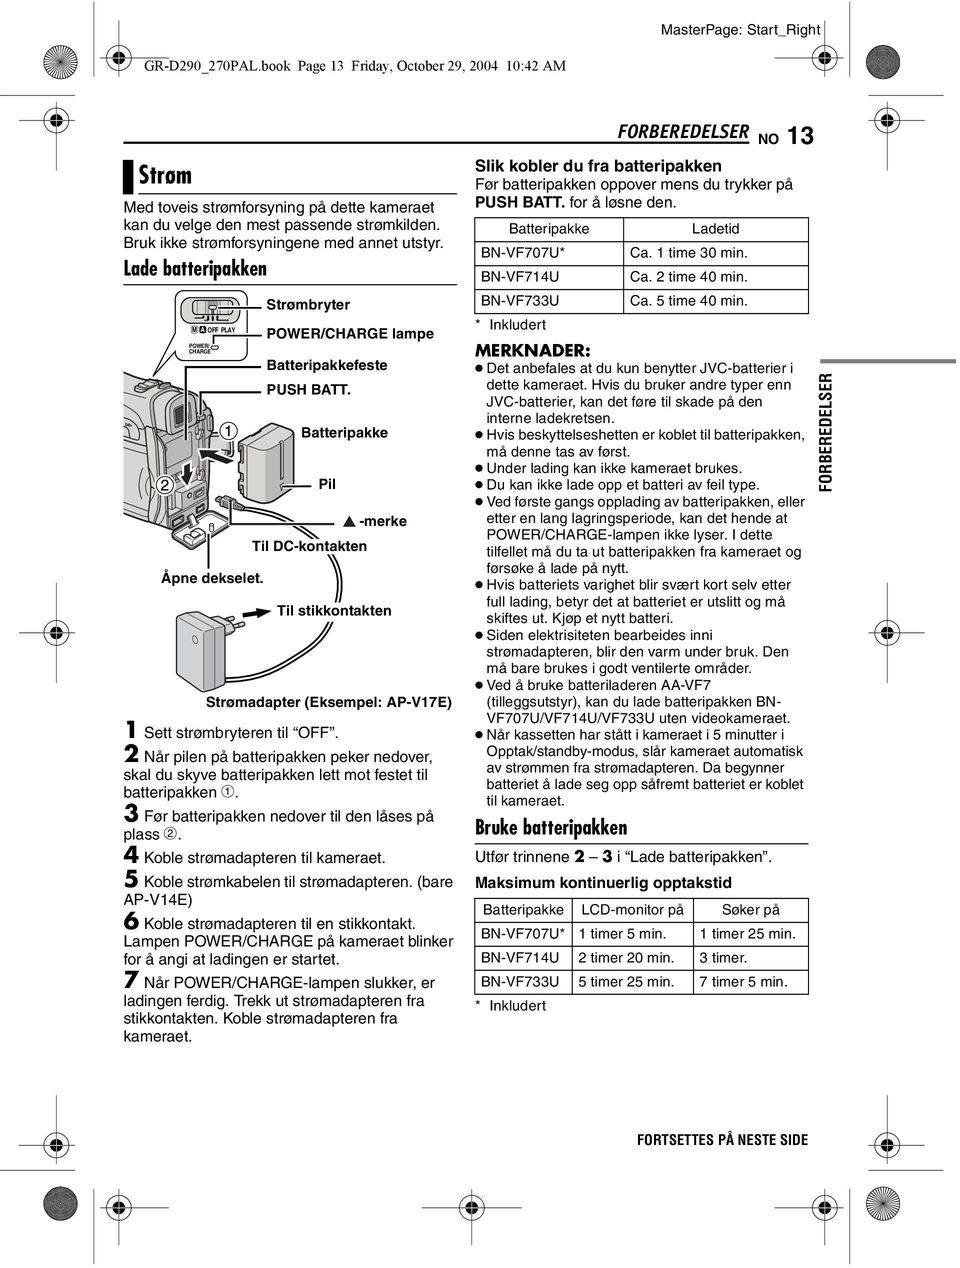 Batteripakke Pil -merke Til DC-kontakten Til stikkontakten Strømadapter (Eksempel: AP-V17E) 1 Sett strømbryteren til OFF.